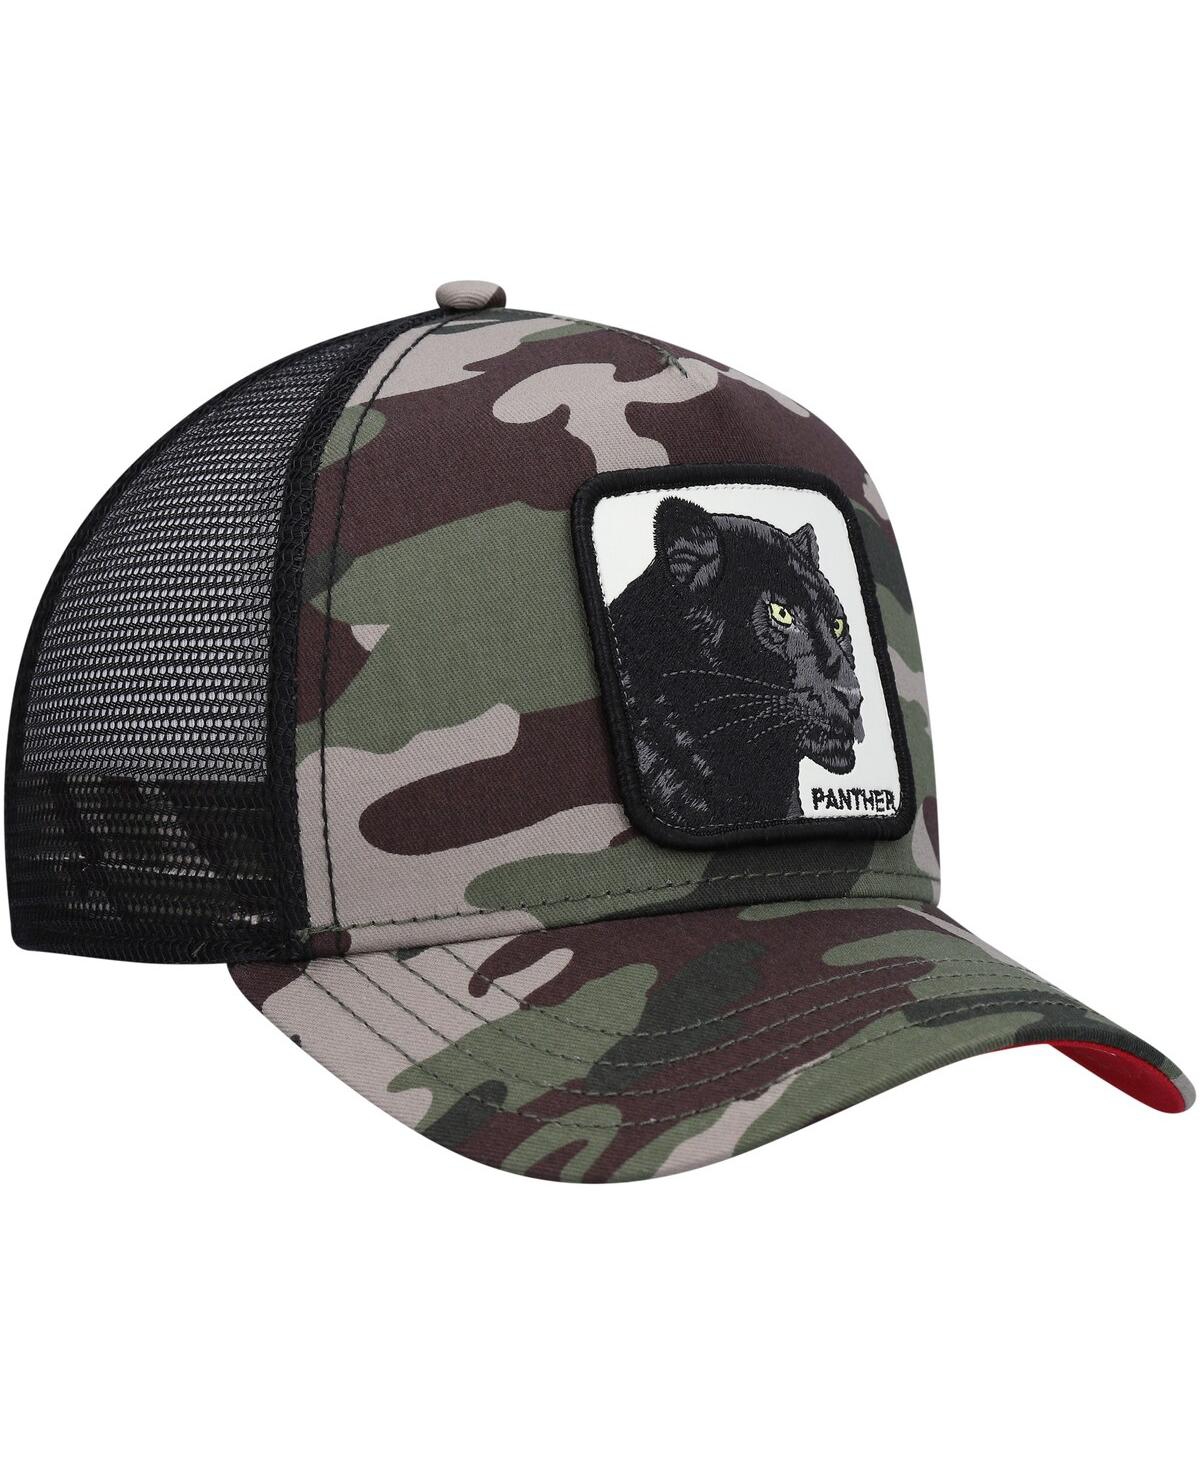 Shop Goorin Bros Men's . Camo The Panther Trucker Adjustable Hat